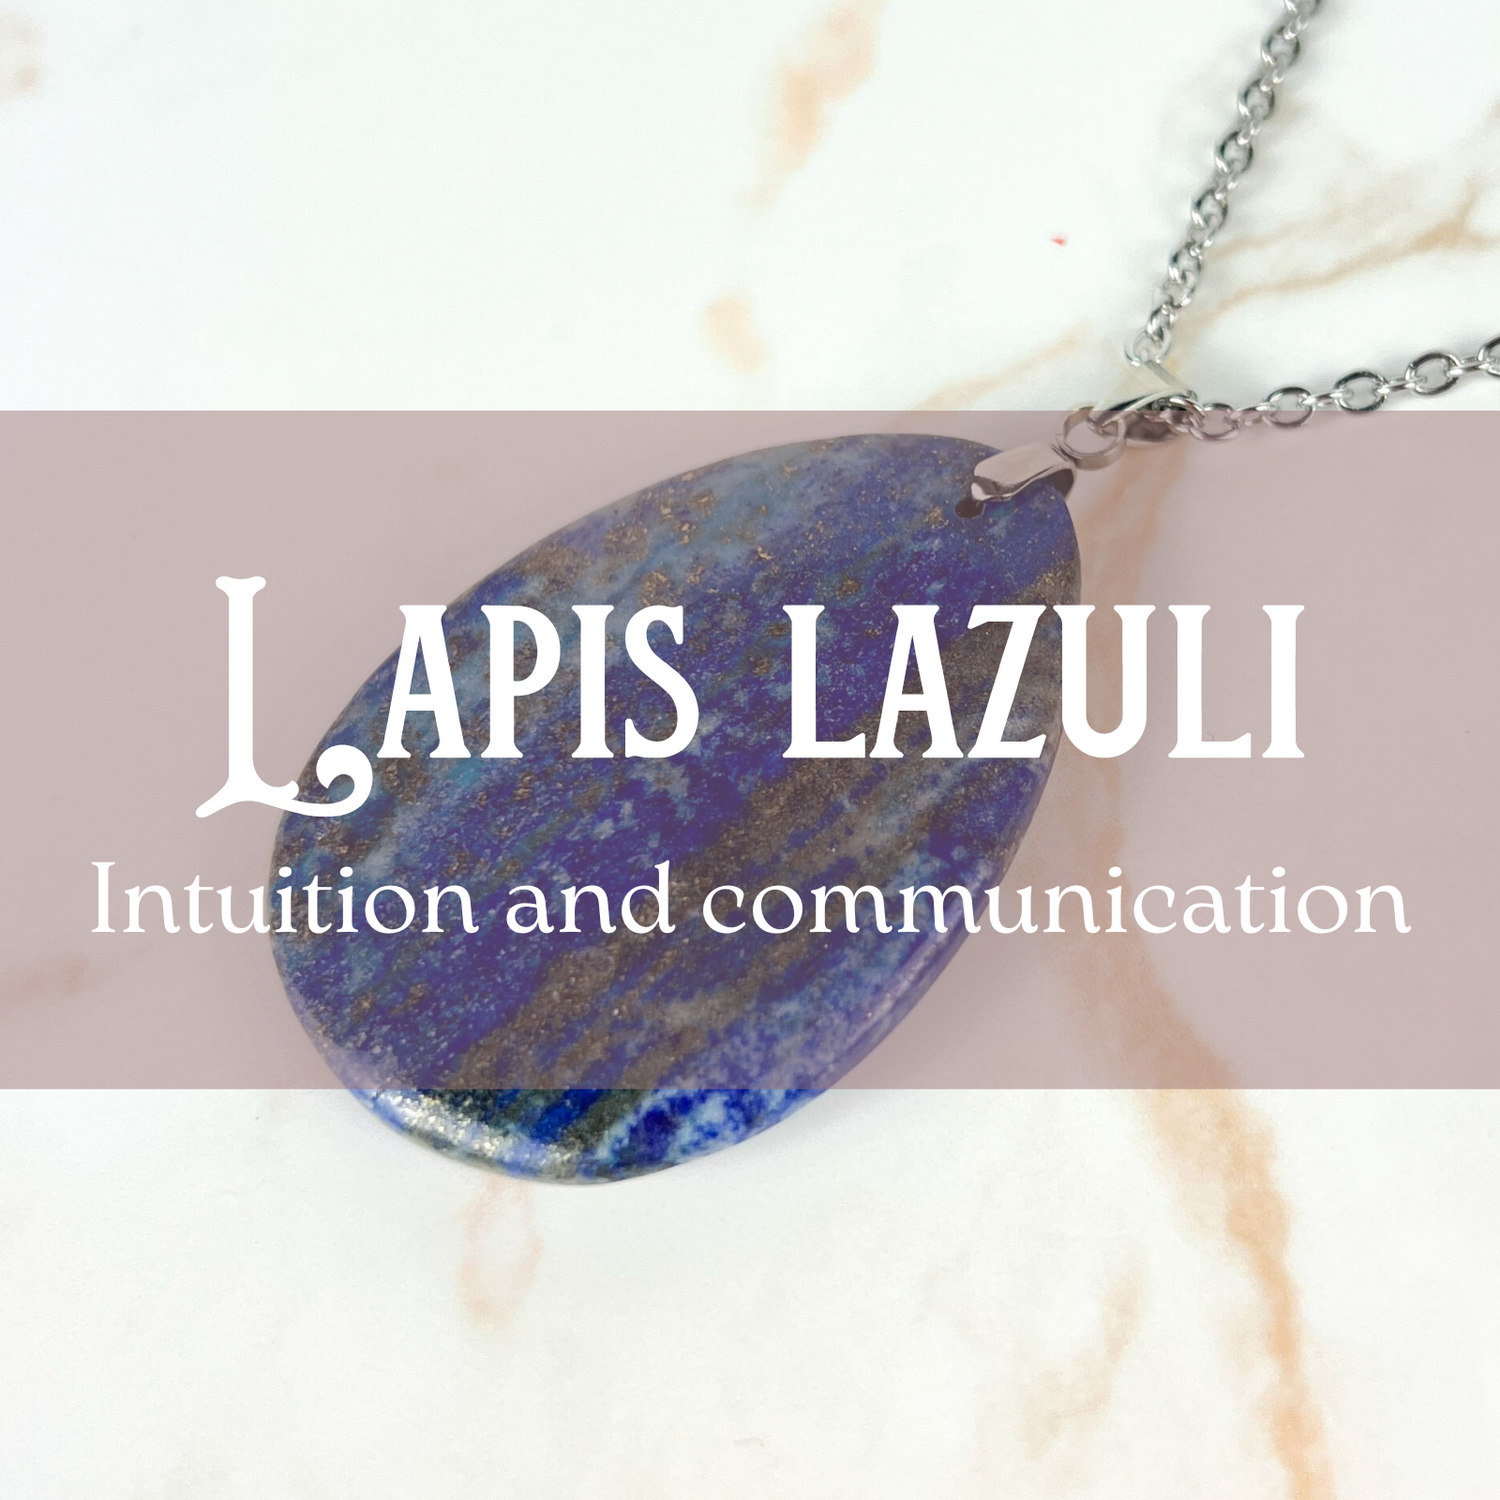 Lapis lazuli jewelry